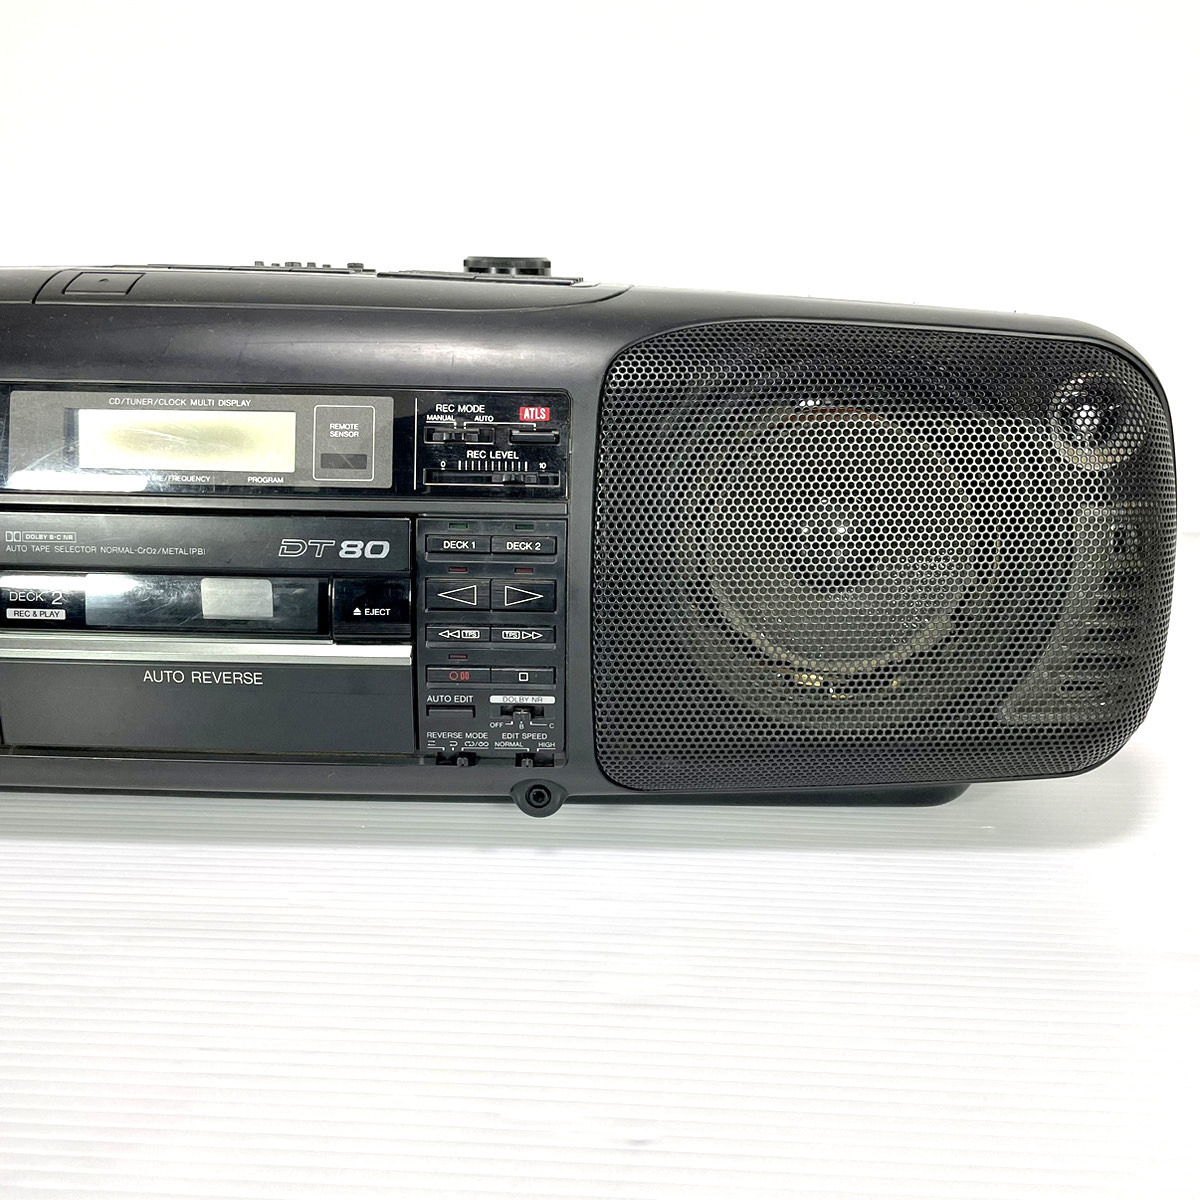 【純正リモコン付/動作美品】Panasonic パナソニック RX-DT80 EUR64762 バブルラジカセ CD ラジオ カセット Tape AM FM RX-DT70 兄弟機の画像4